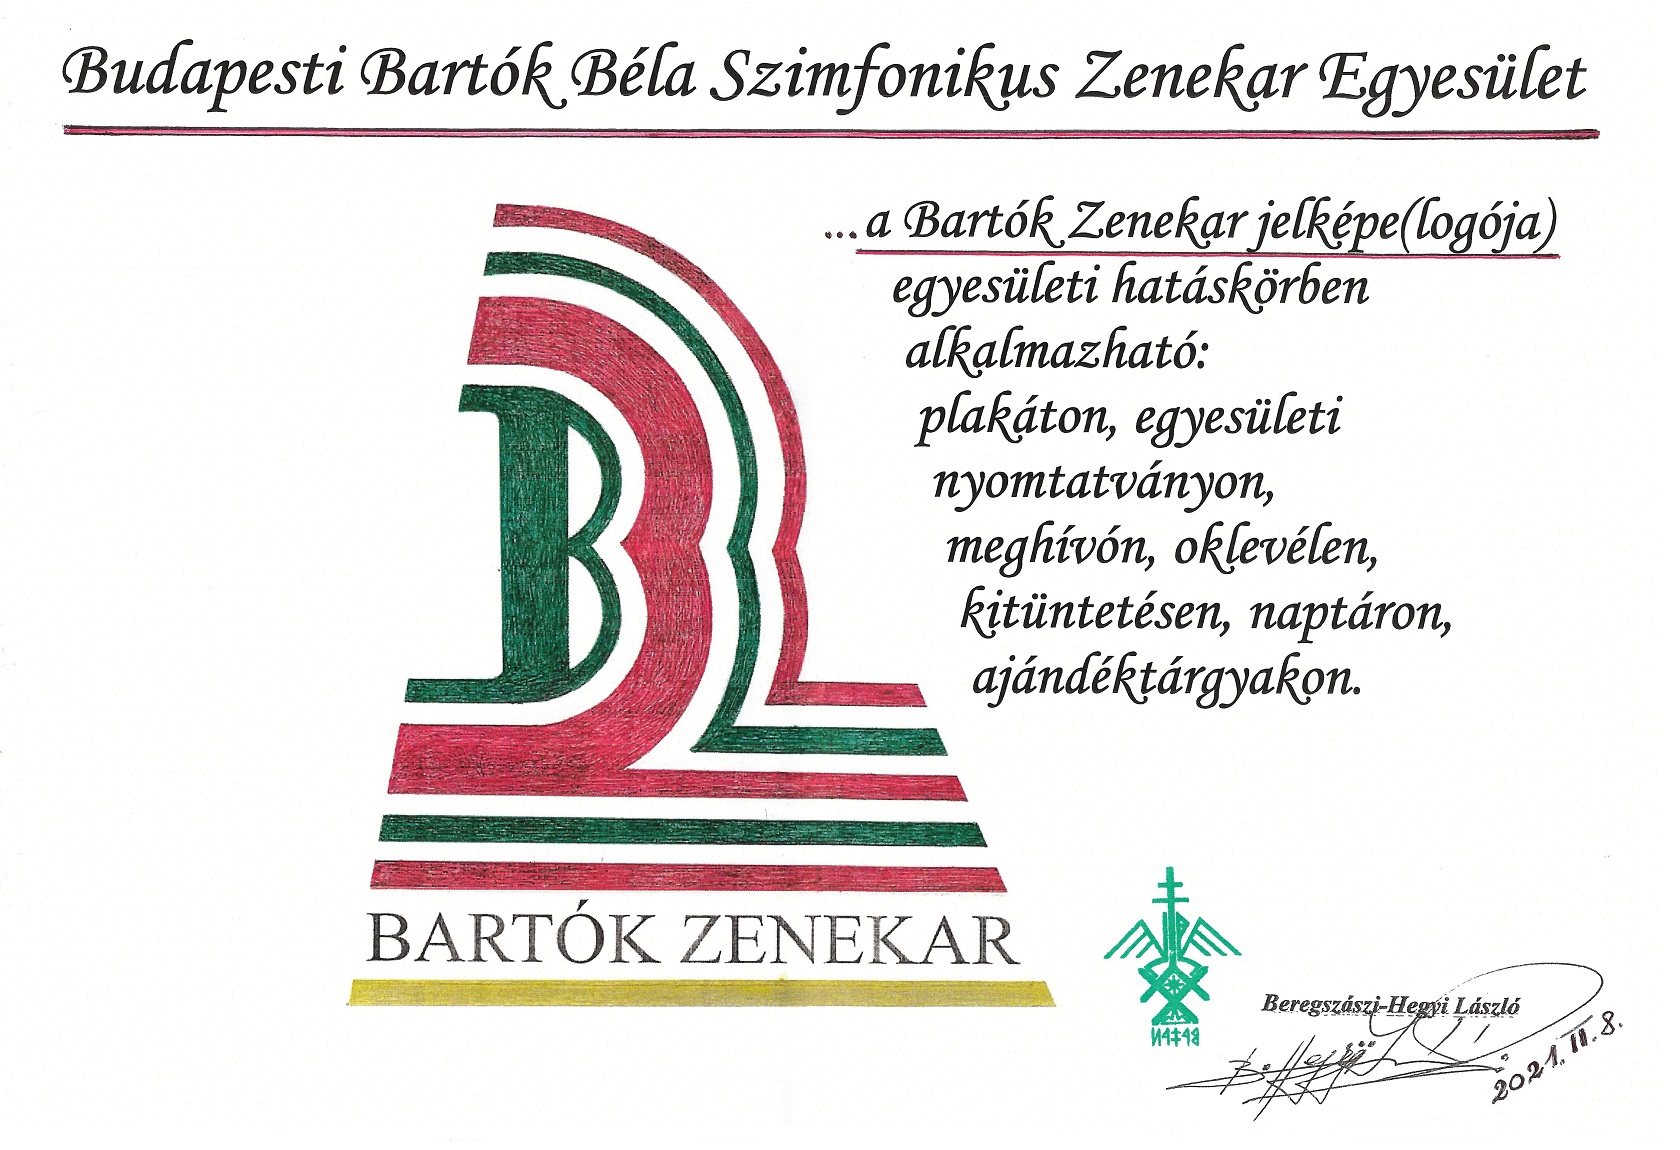 Bartók Zenekar